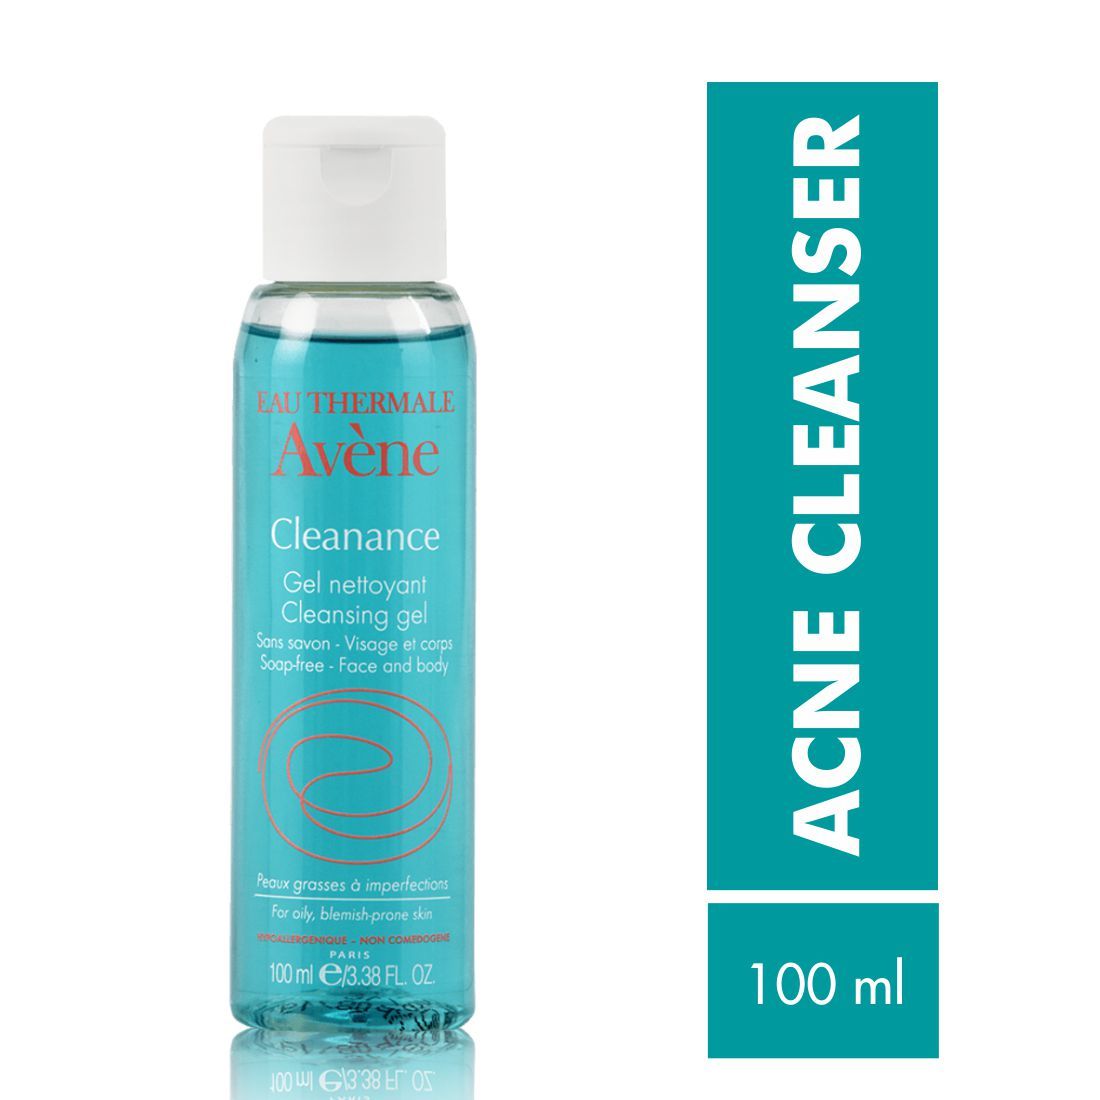 Buy Avene Cleanance Cleansing Gel 100ml - Purplle